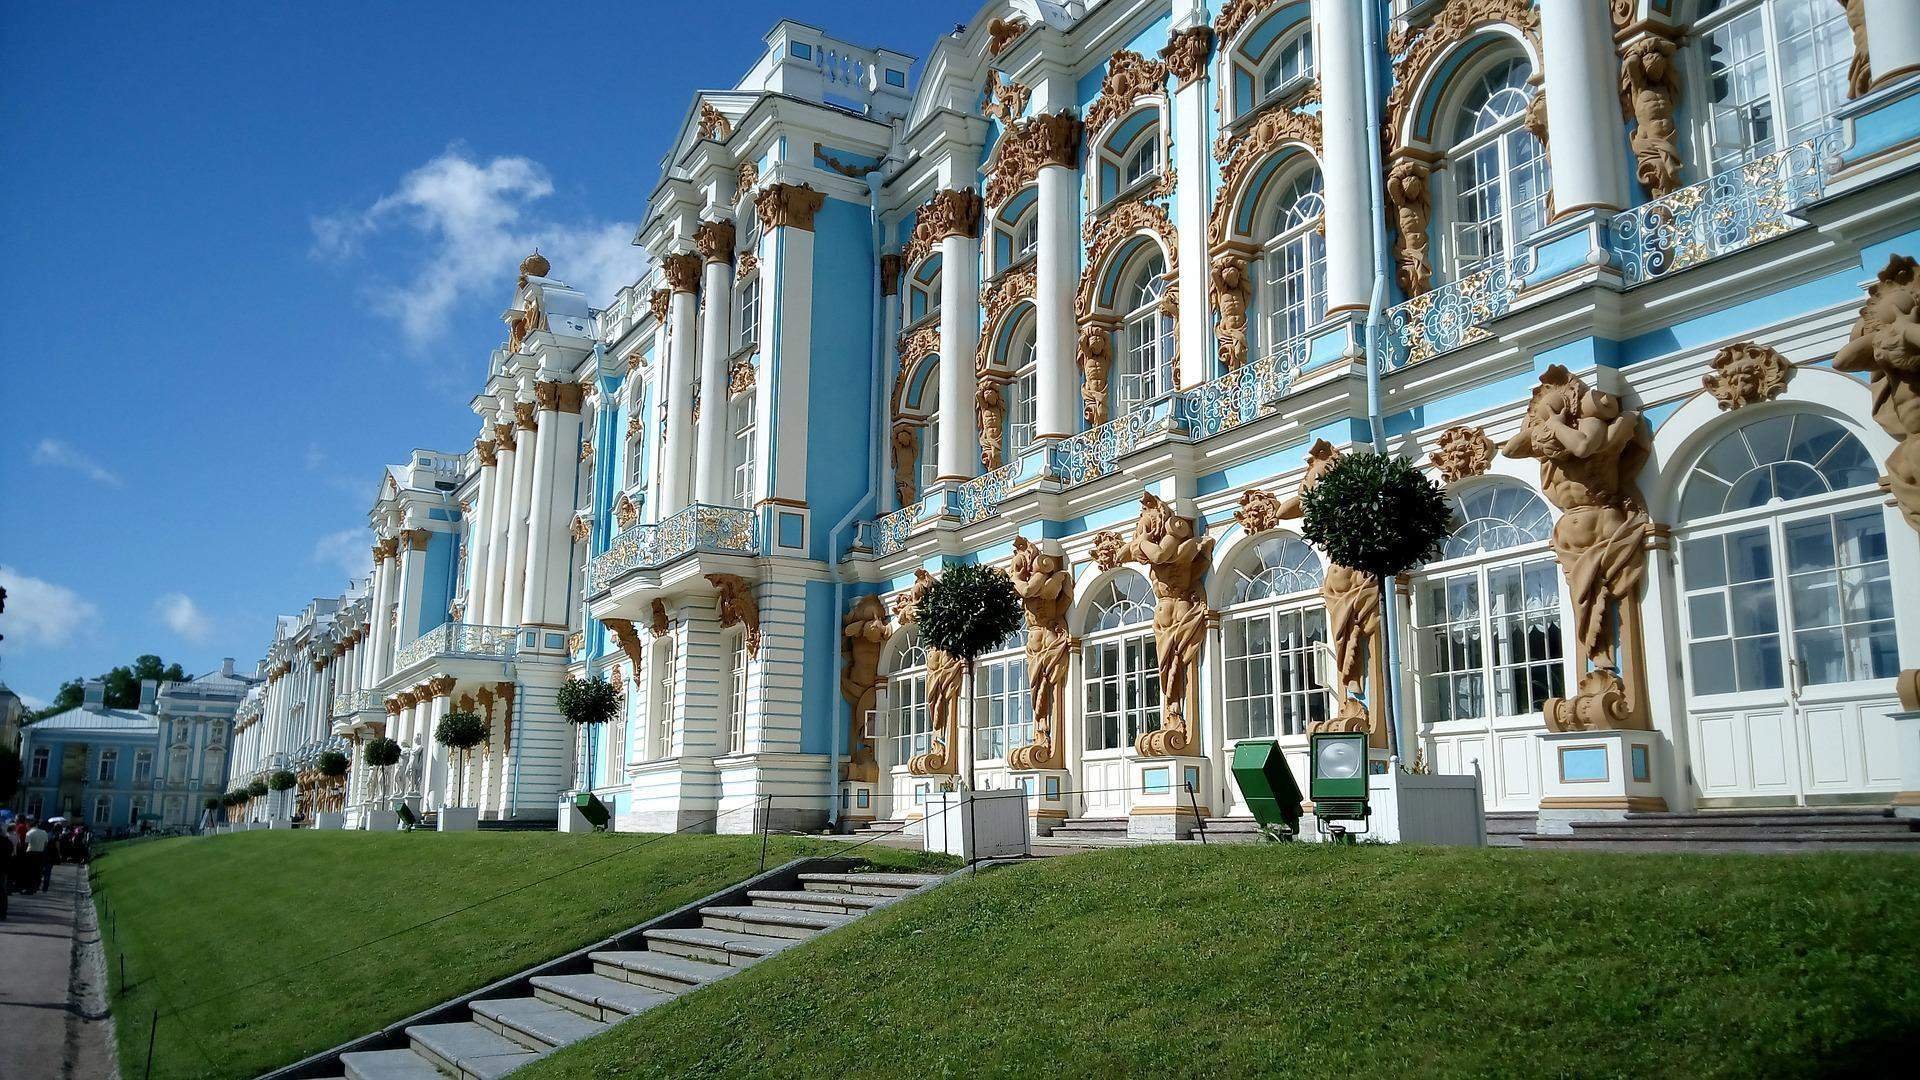 спб пушкин екатерининский дворец